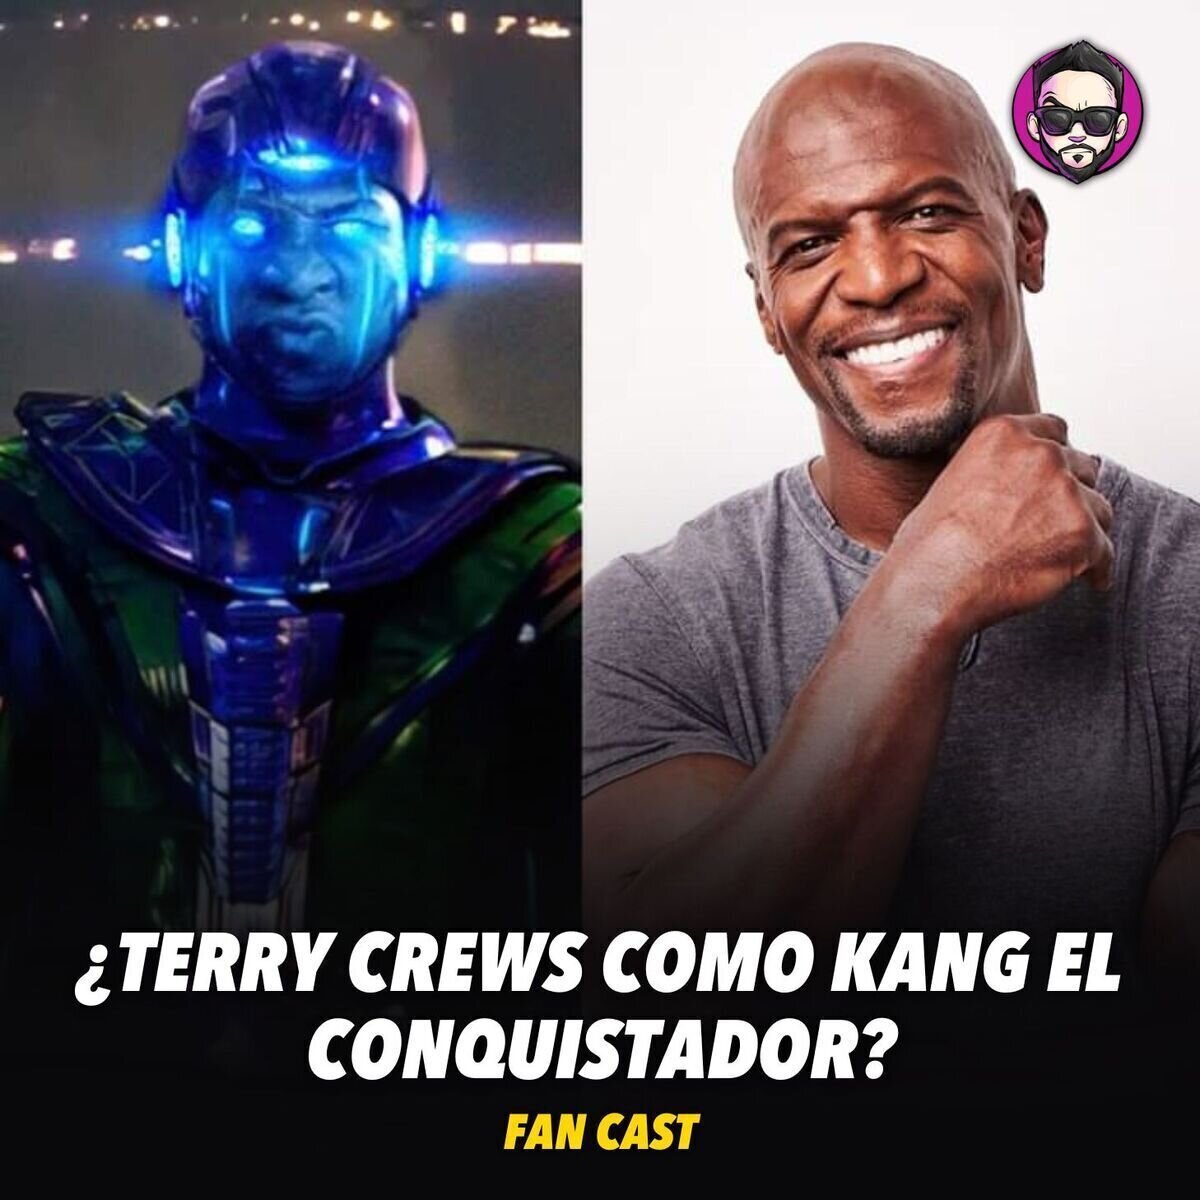 ¿Cuál sería tu reacción si un día #MarvelStudios anuncia que Terry Crews interpretará a Kang el conquistador?